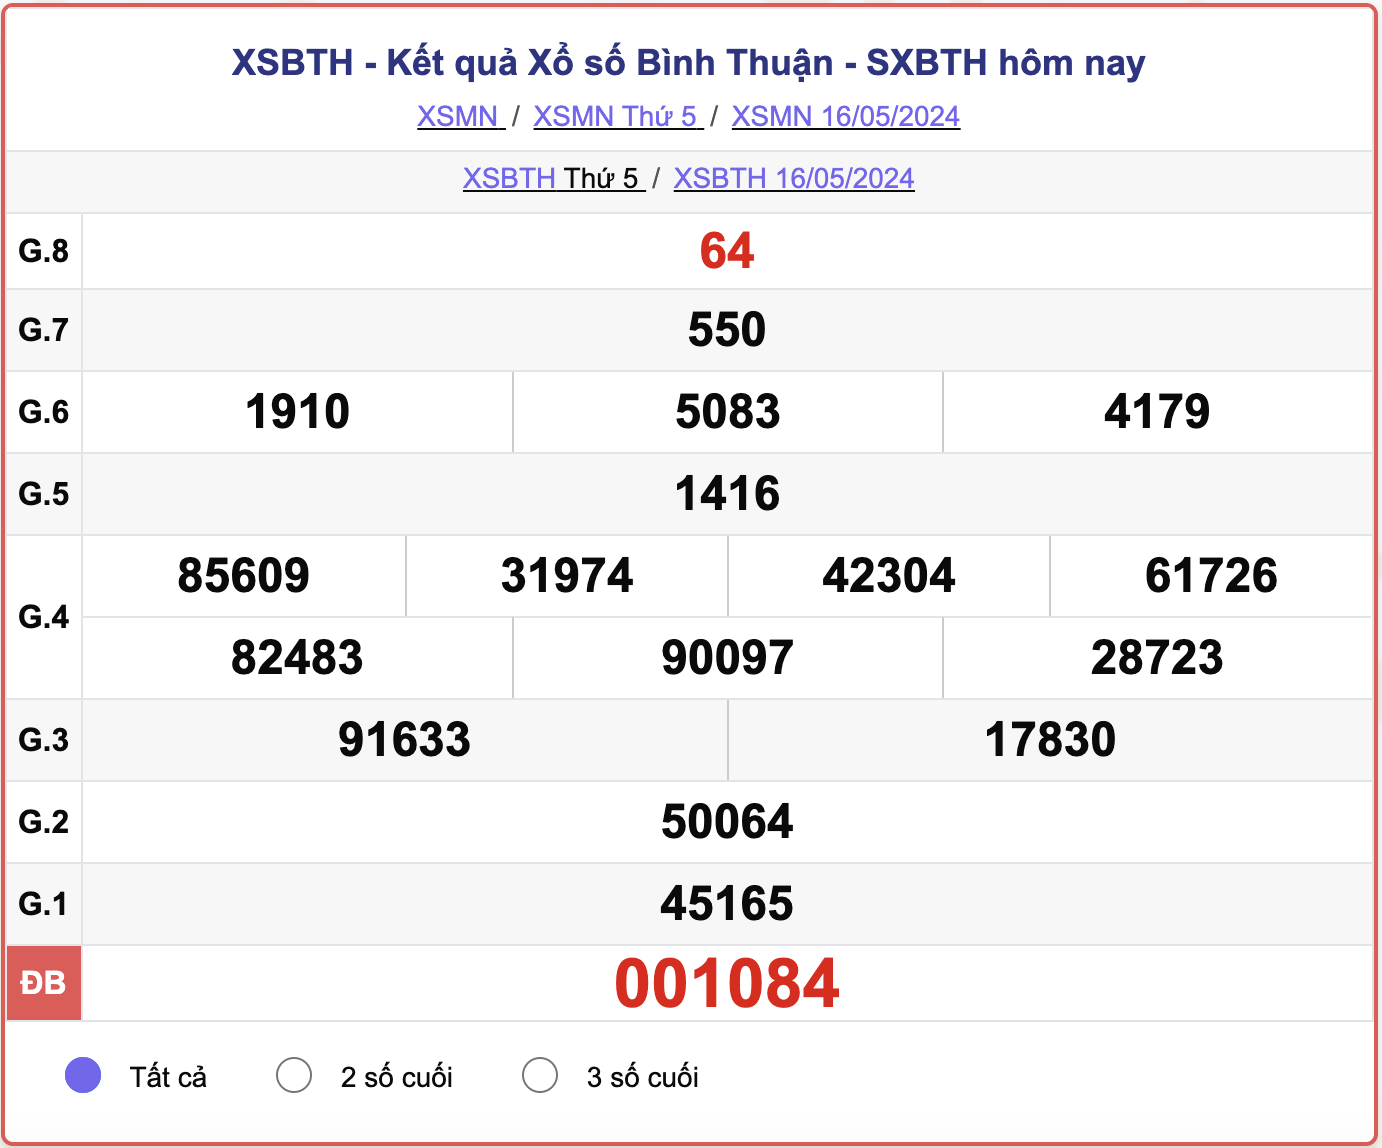 XSBTH thứ Năm, kết quả xổ số Bình Thuận ngày 16/5/2024.